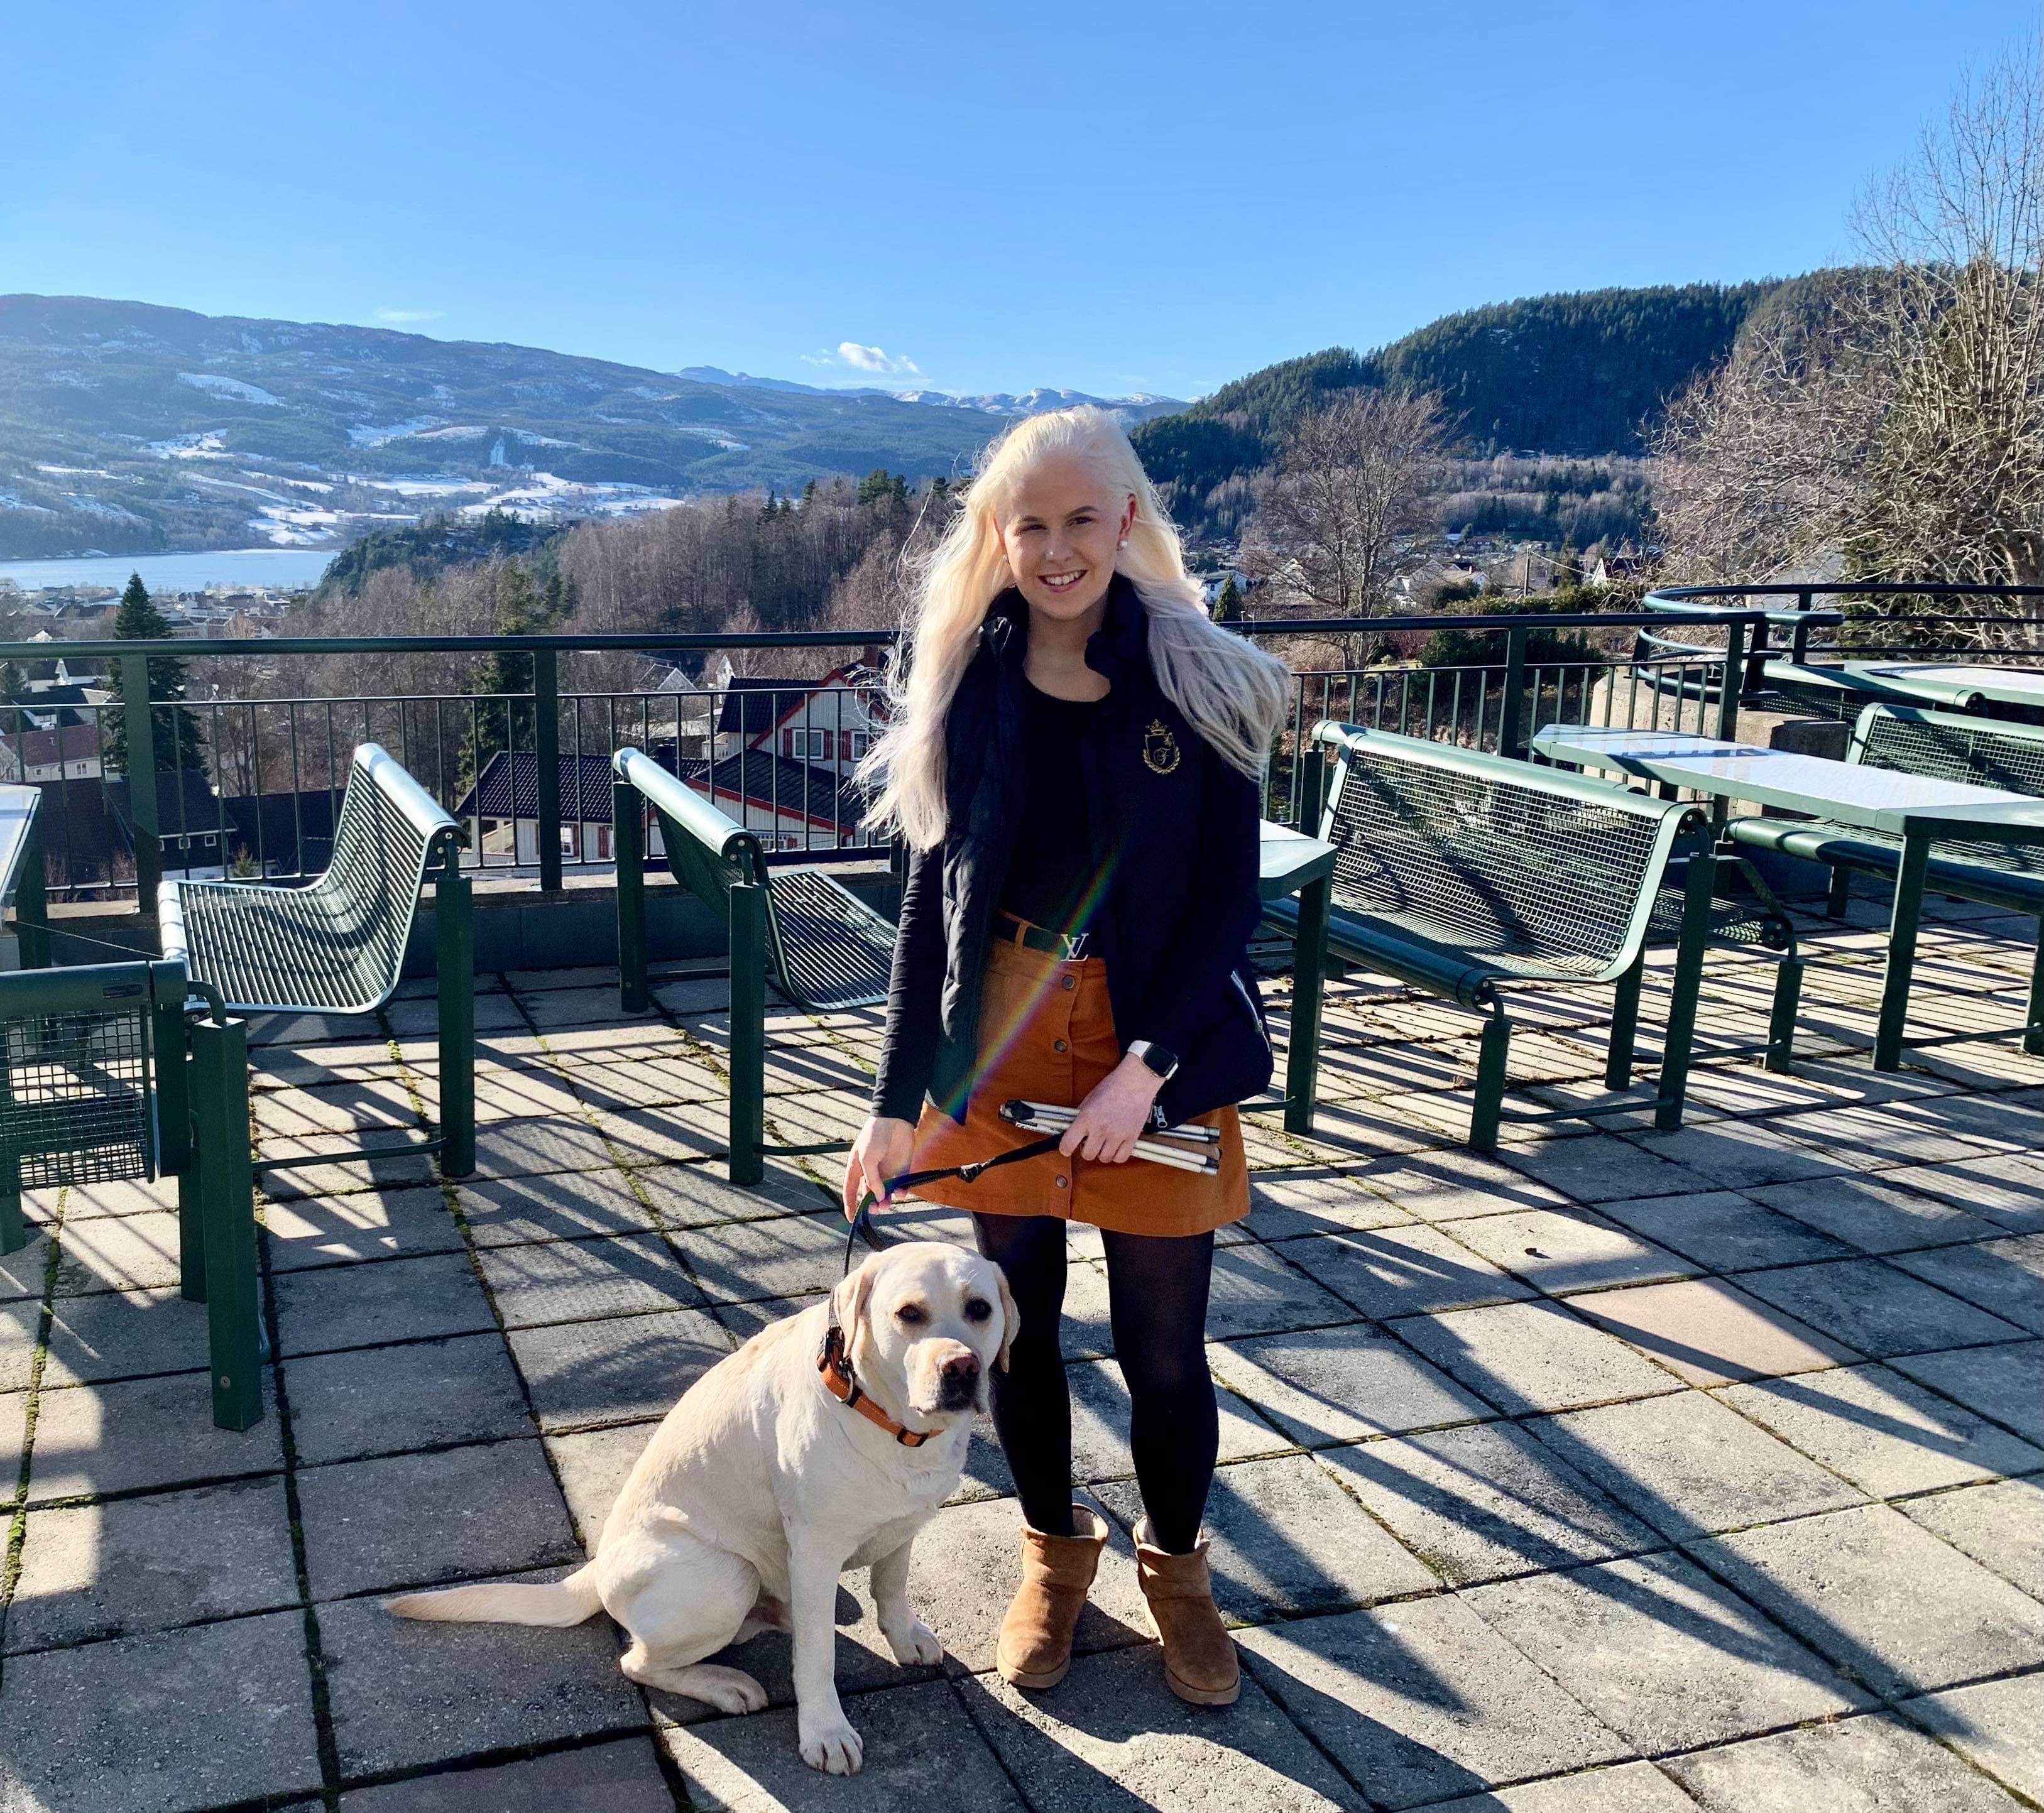 Bilete syner Silje Solvang på tur med hunden Aro. Ho står ute på ein terrasse, medan den lyse labradoren sit ved føtene hennar. Silje smiler mot kameraet, og bak henne skiner sola mot blå himmel.